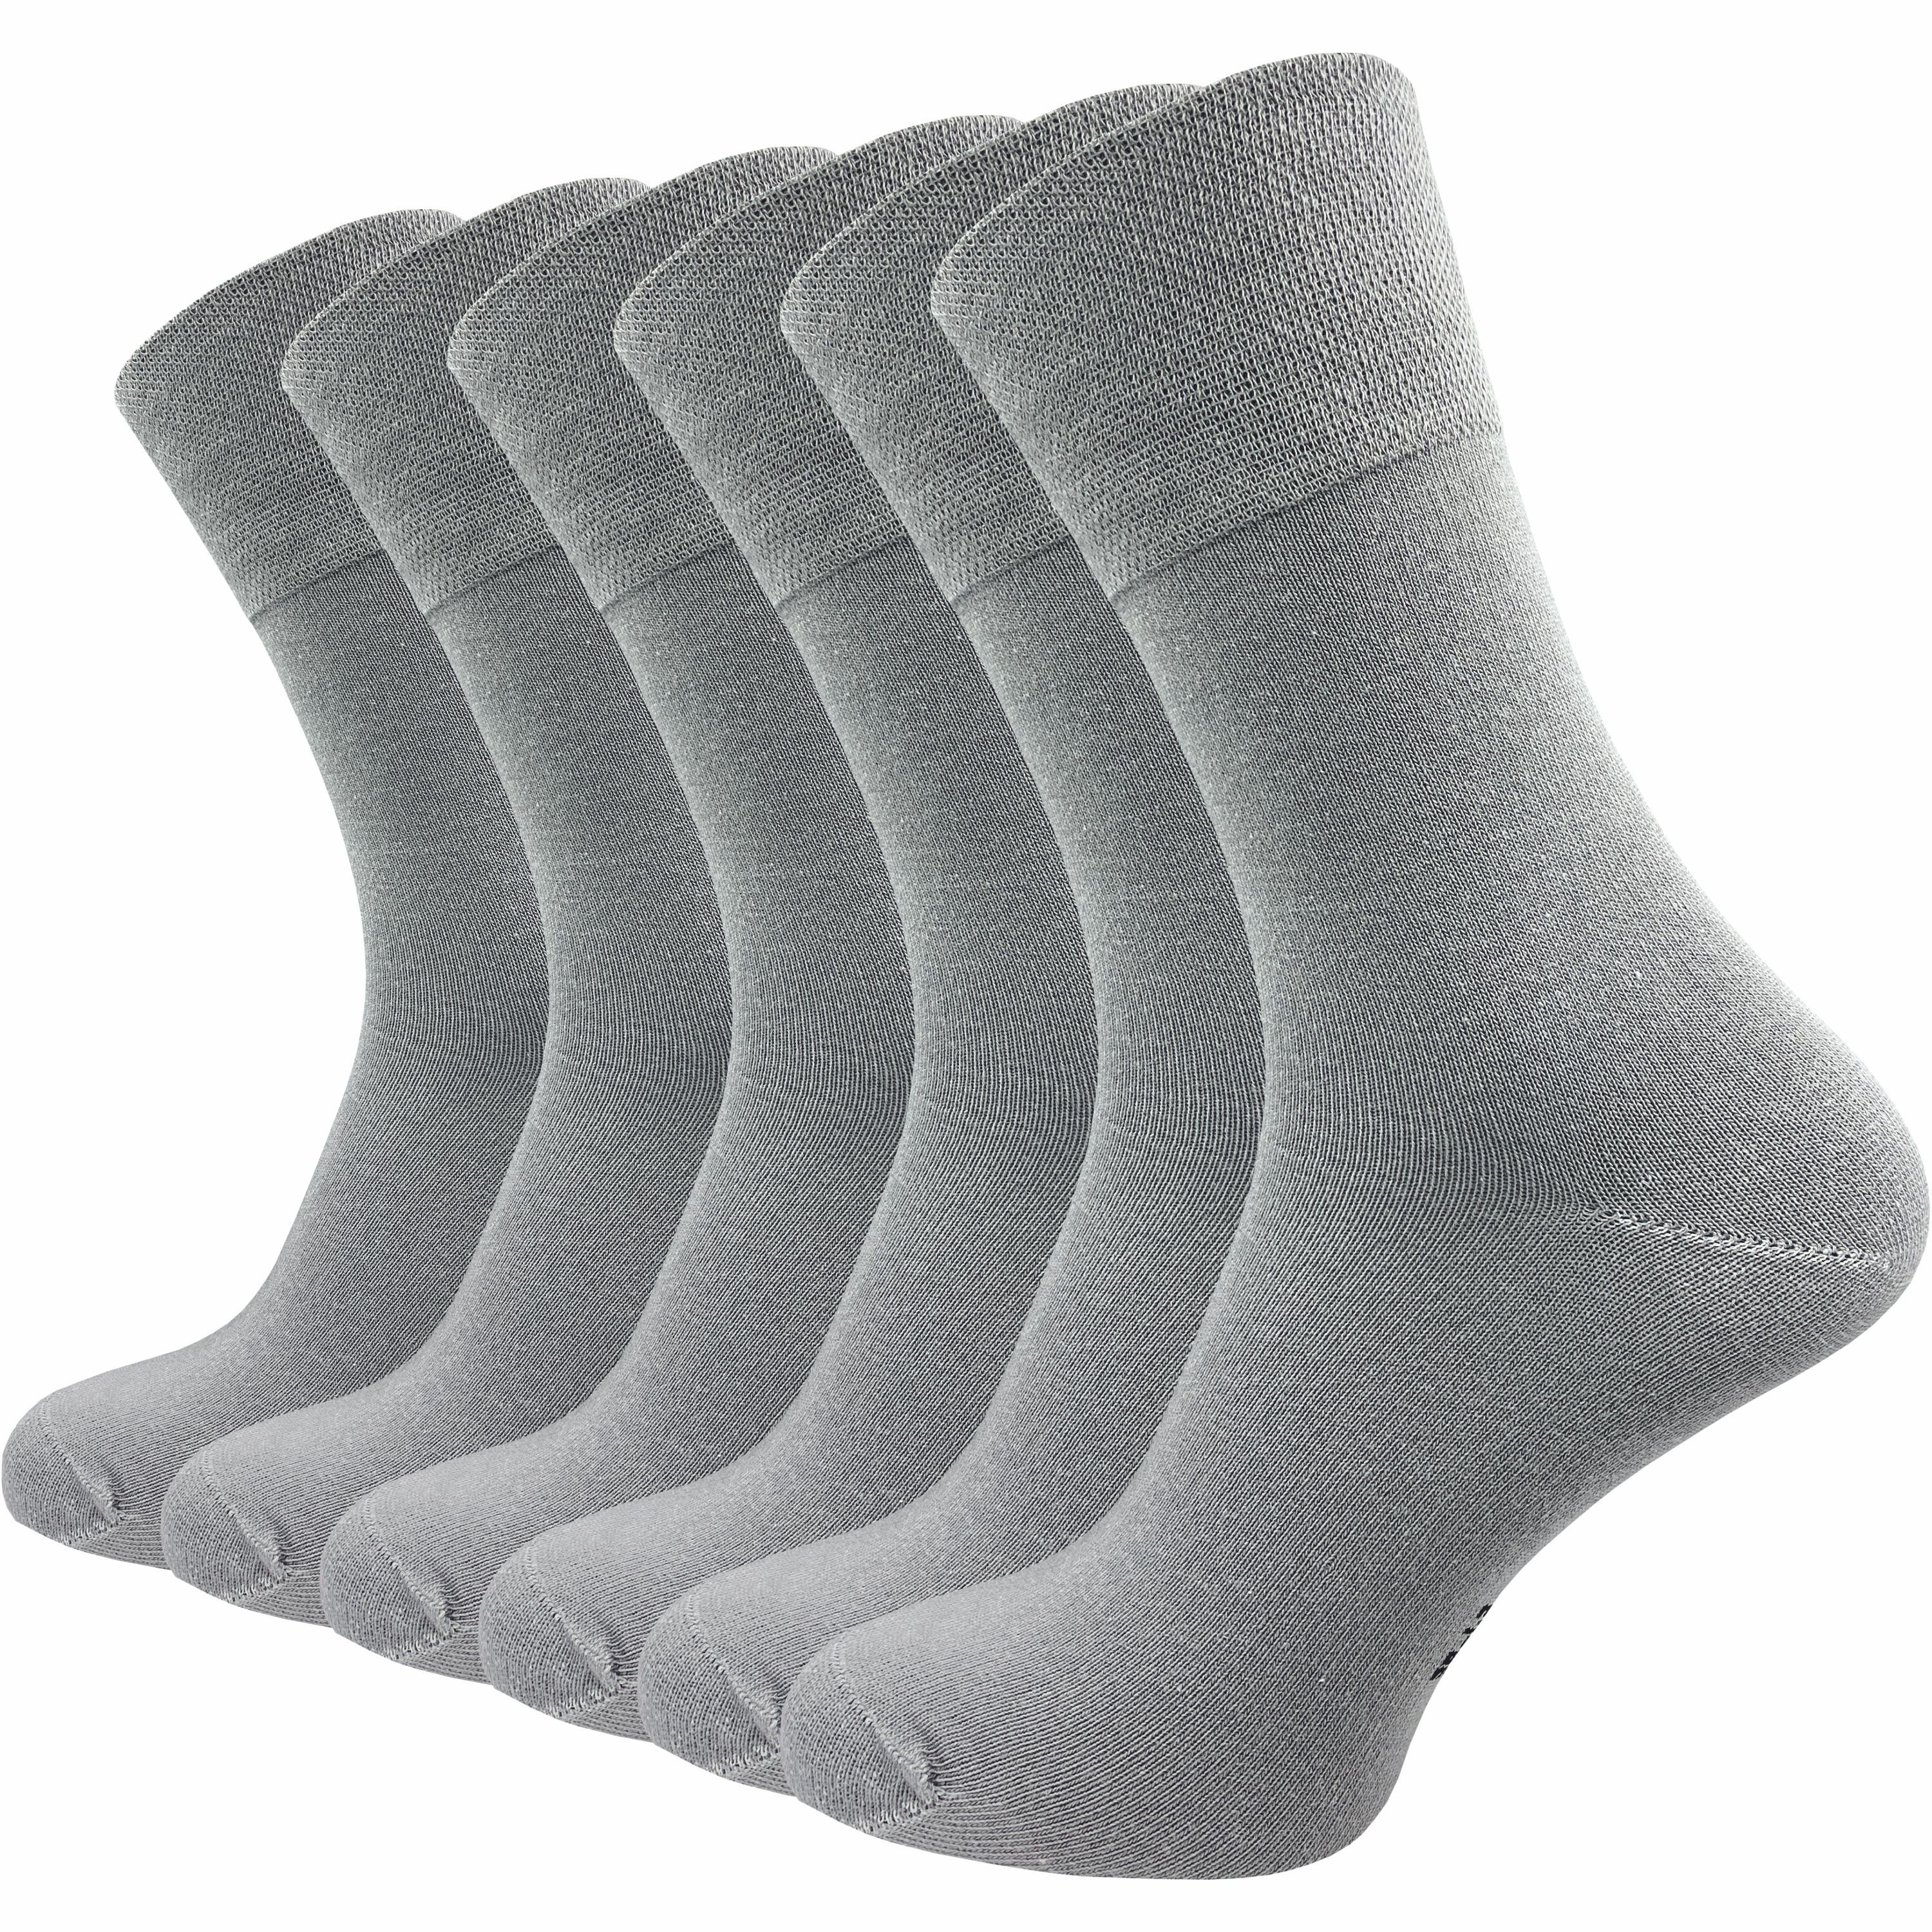 GAWILO Diabetikersocken für Damen, ohne Gummidruck & ohne drückende Naht - Business Socke (6 Paar) extra breiter Piquet-Strick am Komfortbund; in schwarz, grau & weitere